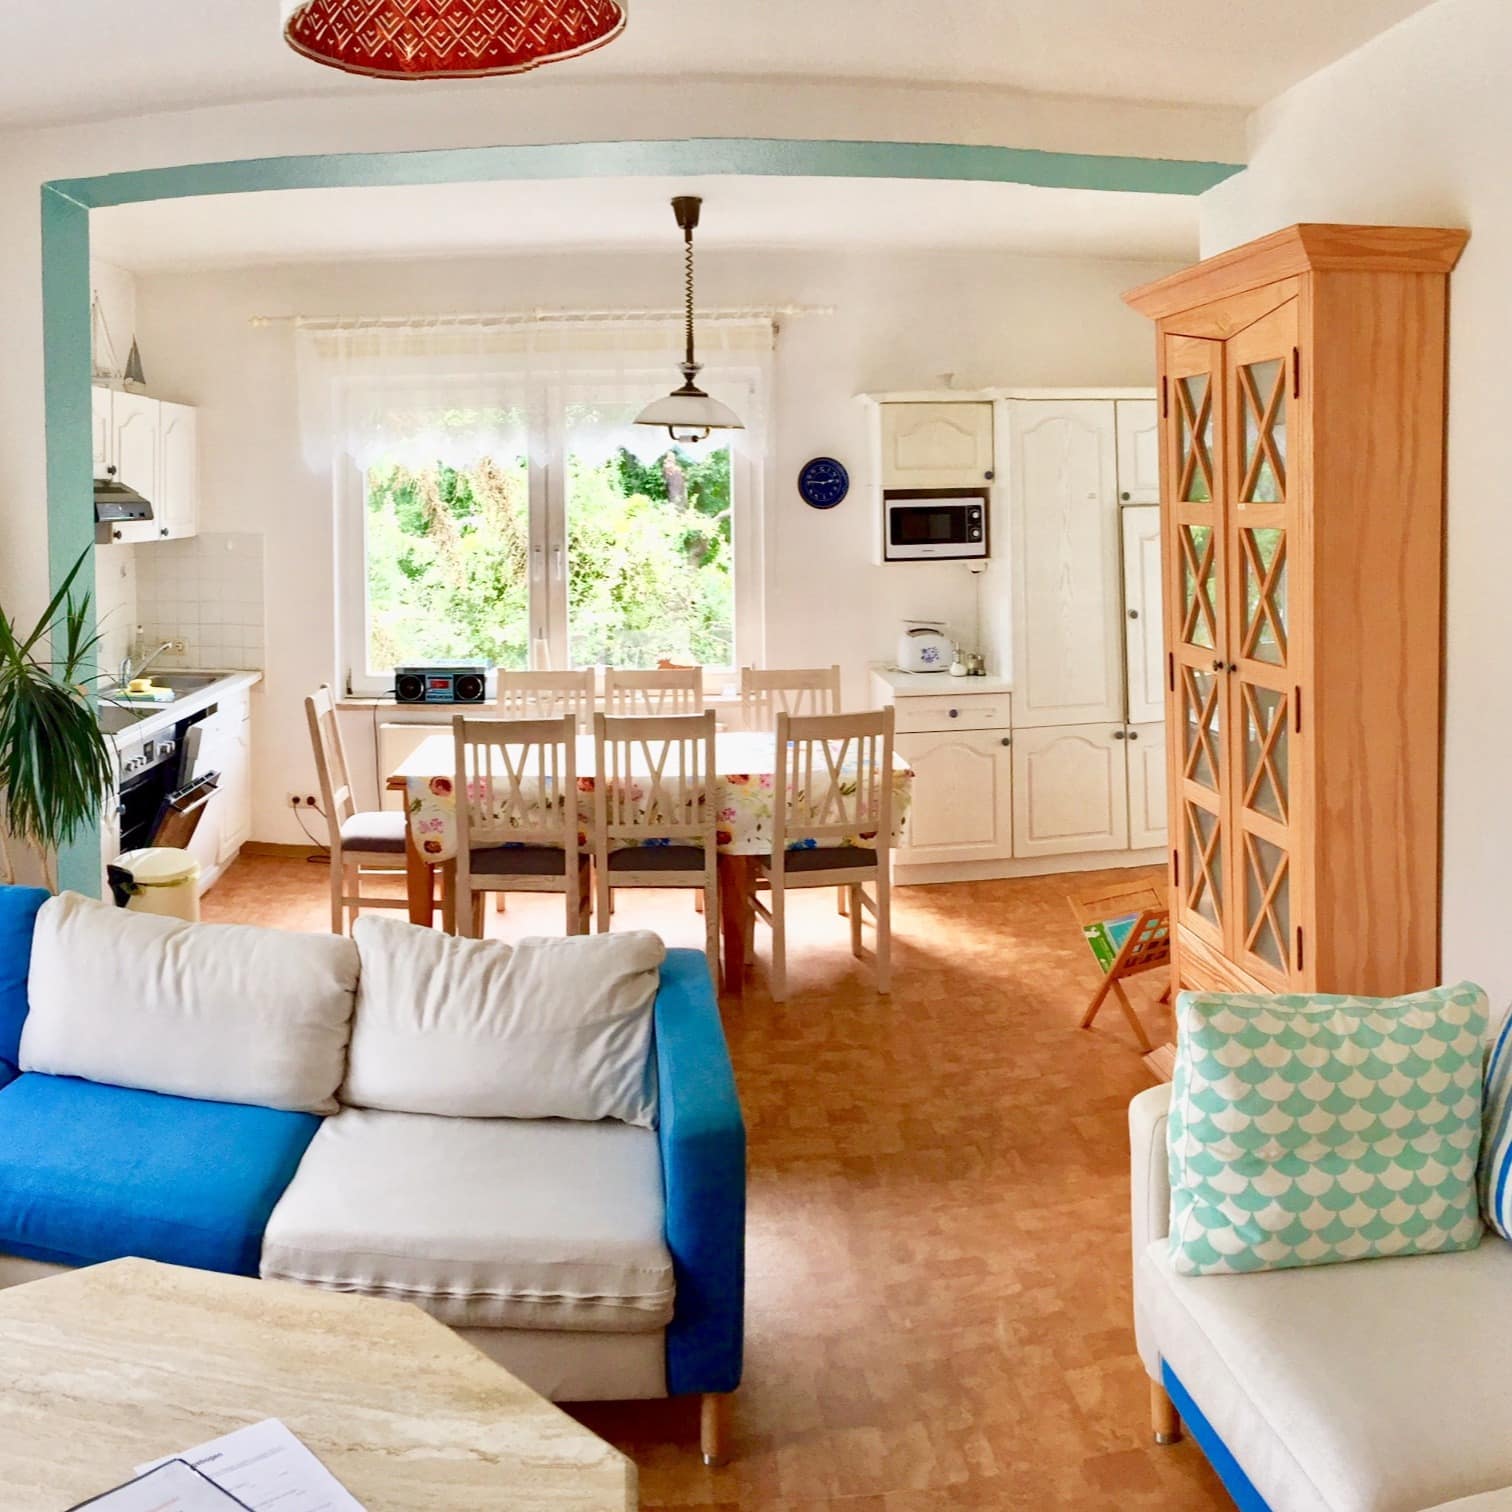 Wohnzimmer und Küche einer hell und freundlich eingerichteten Ferienwohnung an der Mecklenburger Seenplatte